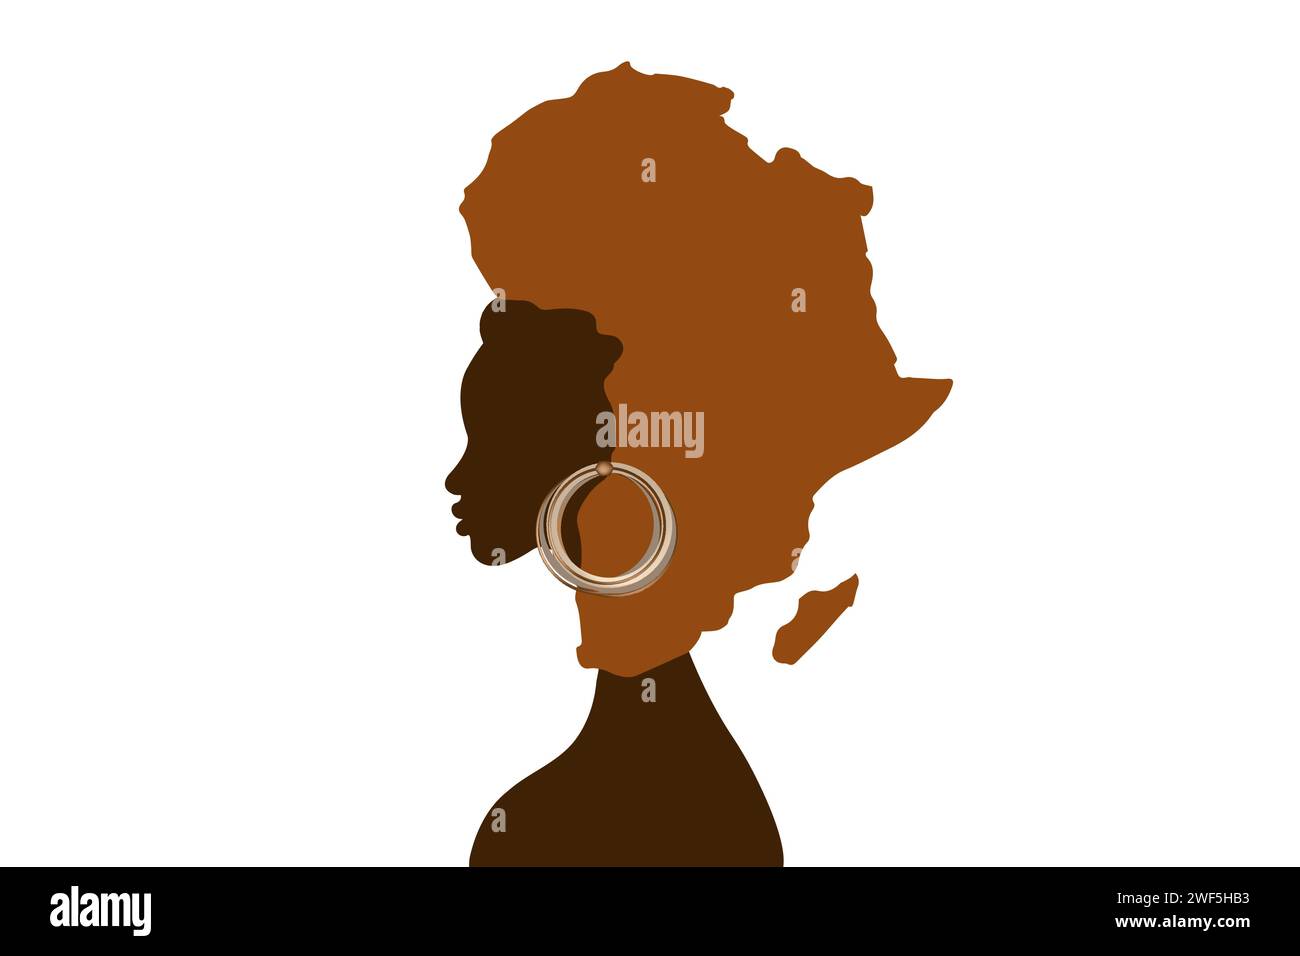 Concept de femme africaine, silhouette de profil de visage avec turban en forme de carte de l'Afrique. Modèle de conception de logo afro tribal illustration vectorielle Illustration de Vecteur